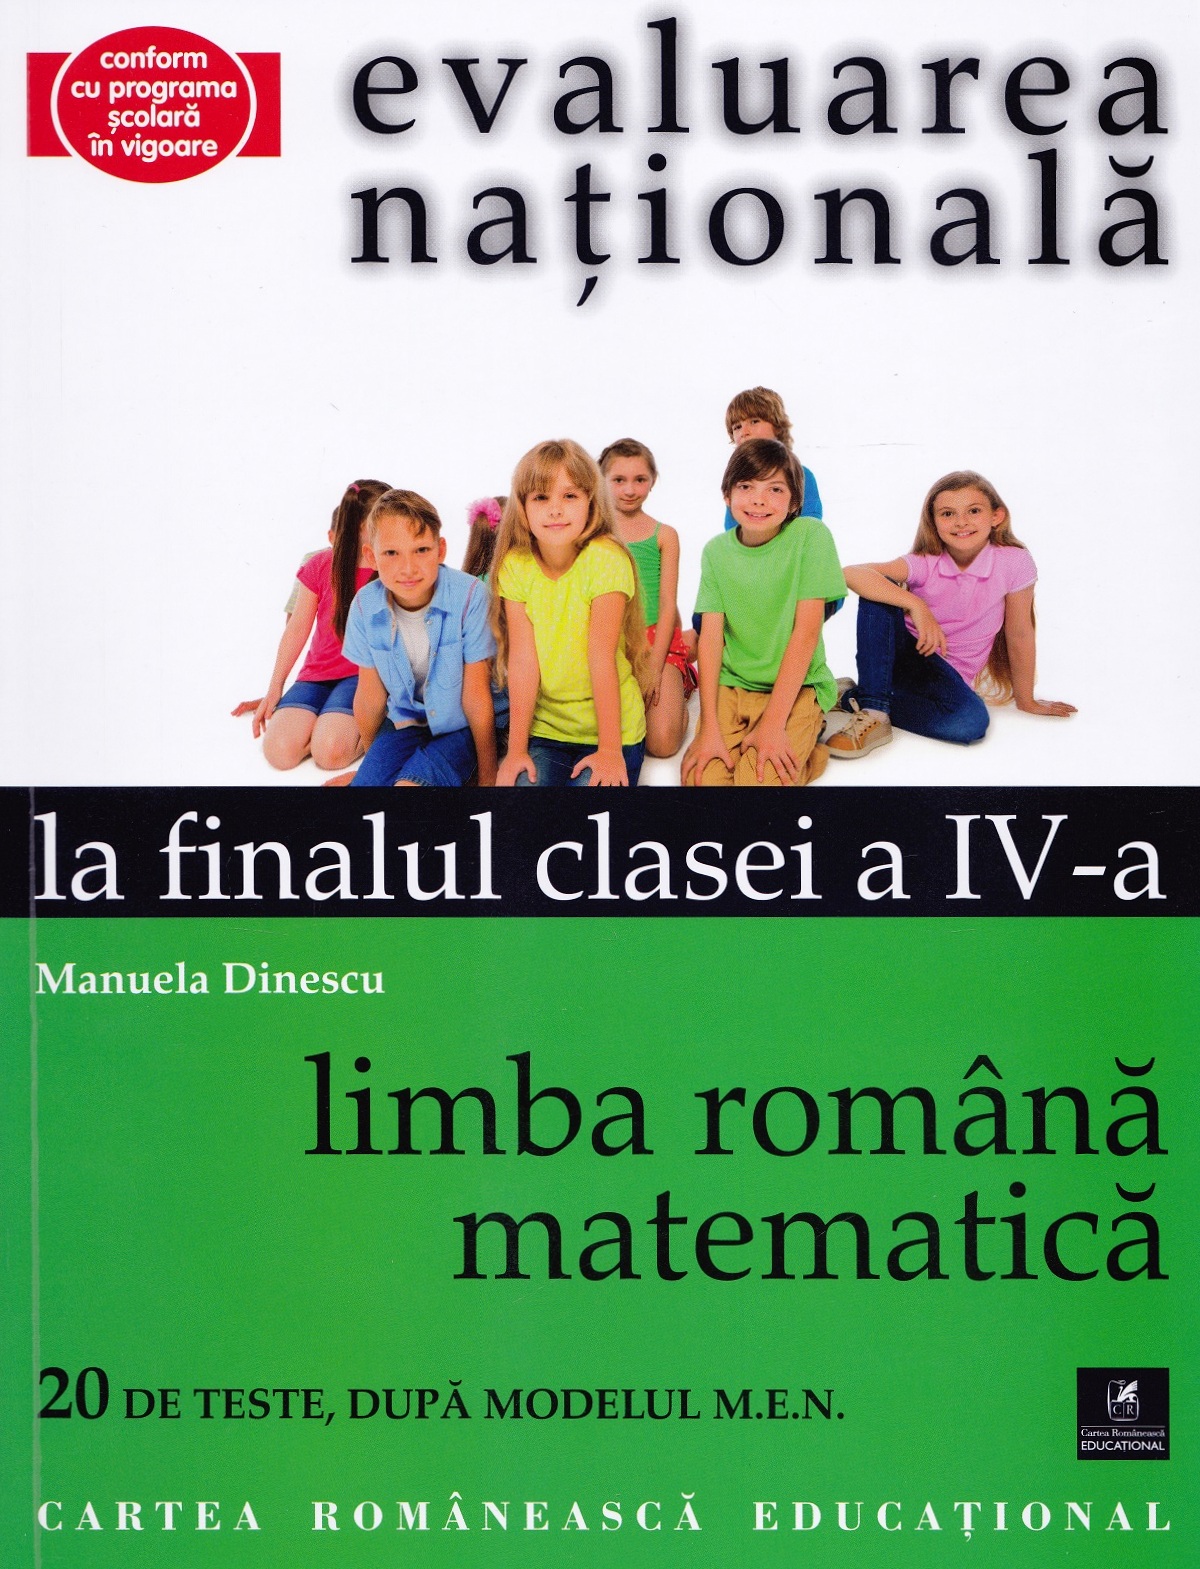 Evaluarea nationala la finalul clasei 4 - Limba romana, matematica - Manuela Dinescu